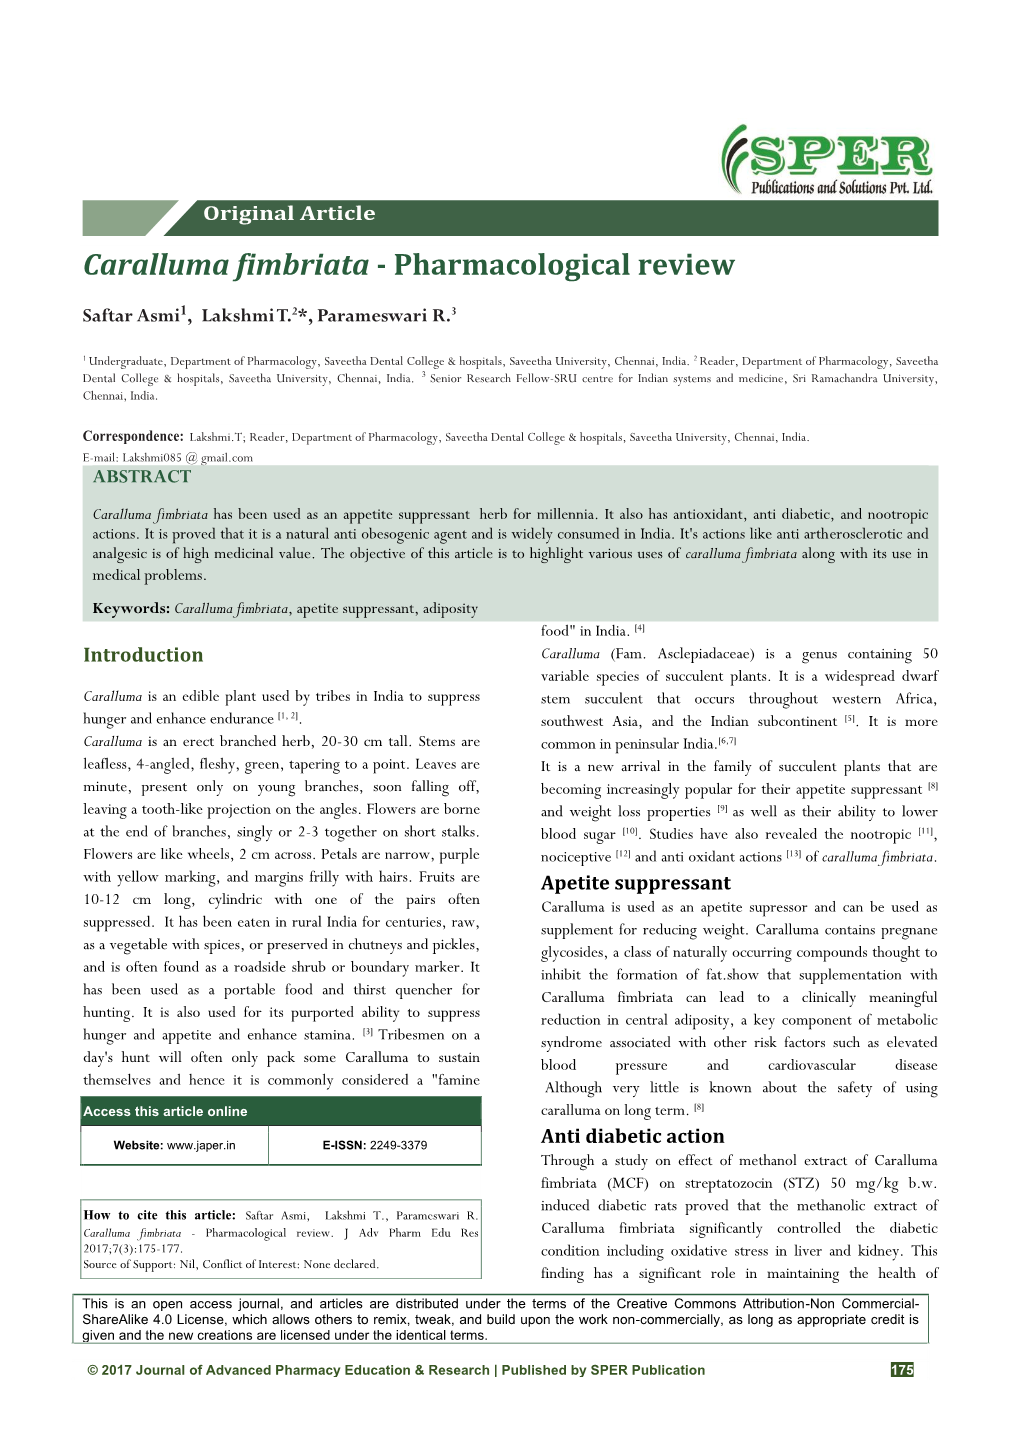 Caralluma Fimbriata - Pharmacological Review